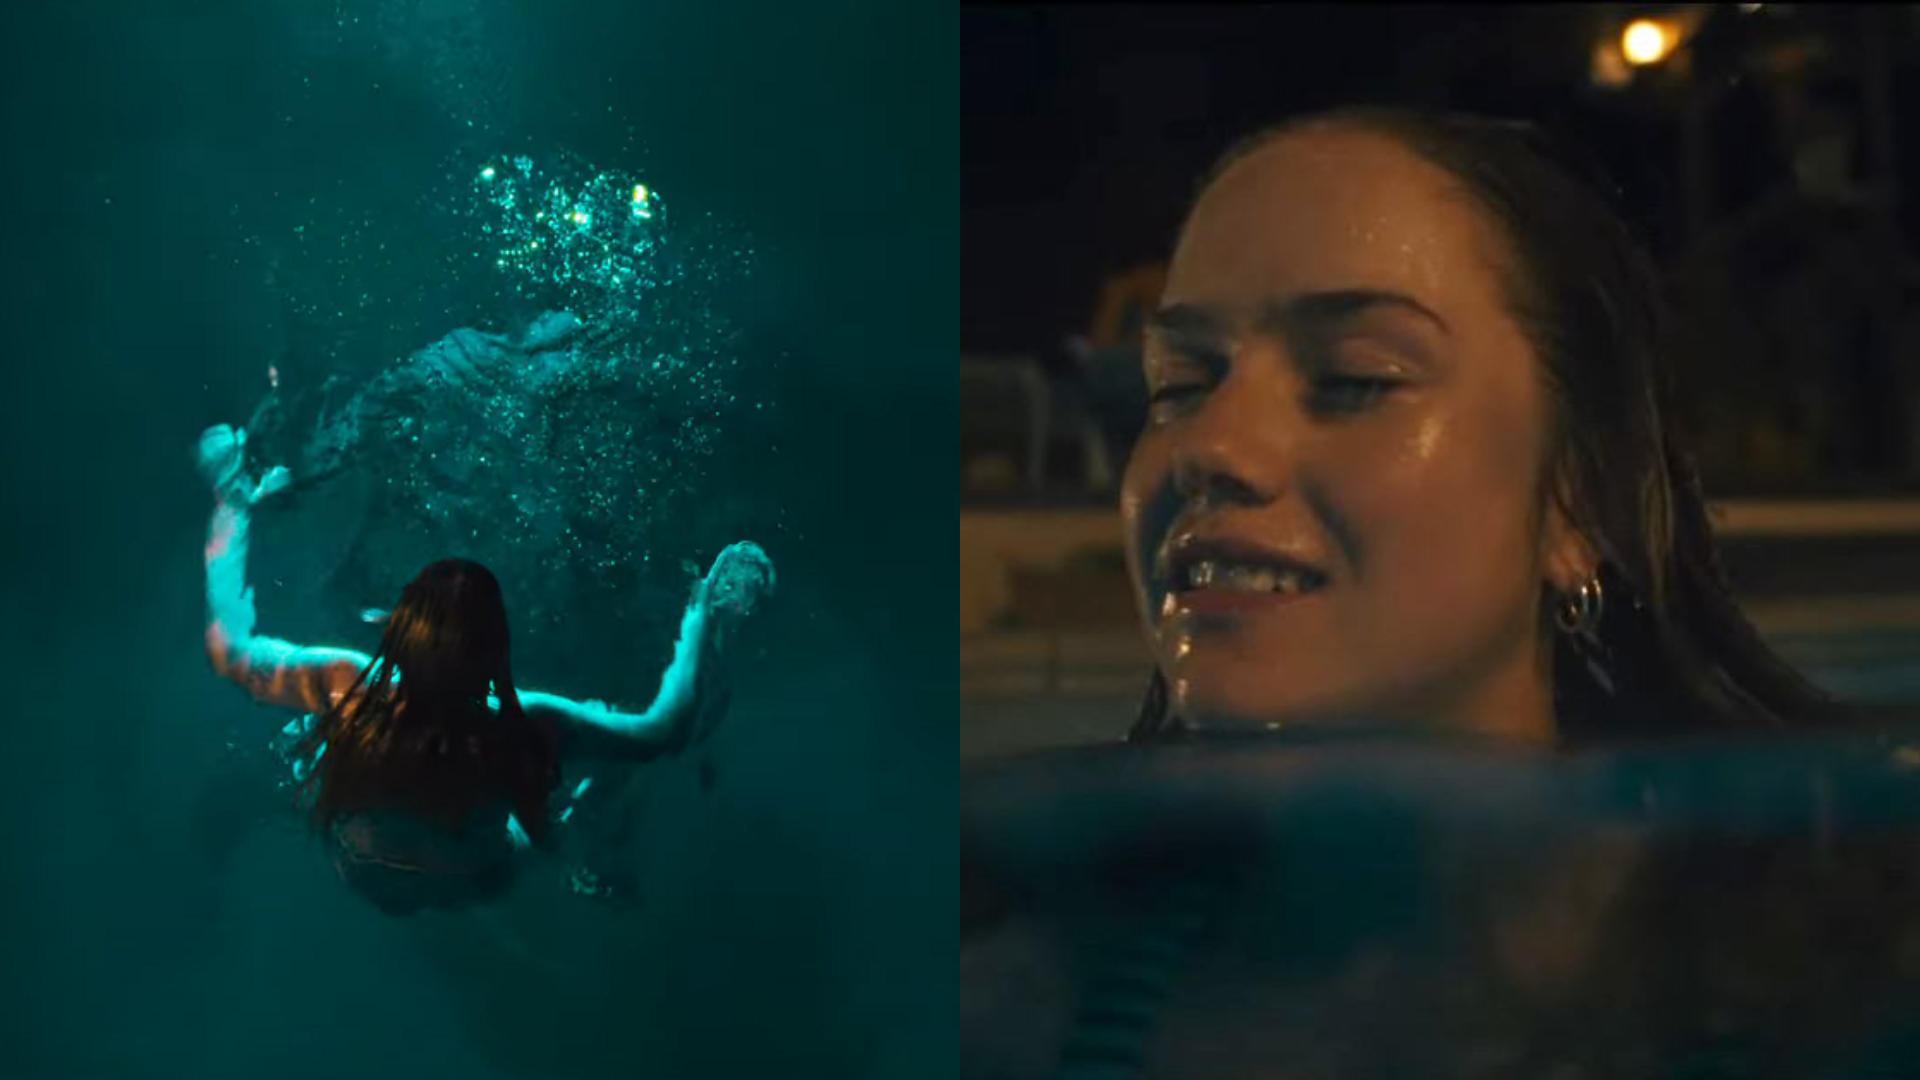 Mergulho Noturno: Brincadeira na piscina termina em noite macabra no trailer de novo longa de terror; assista